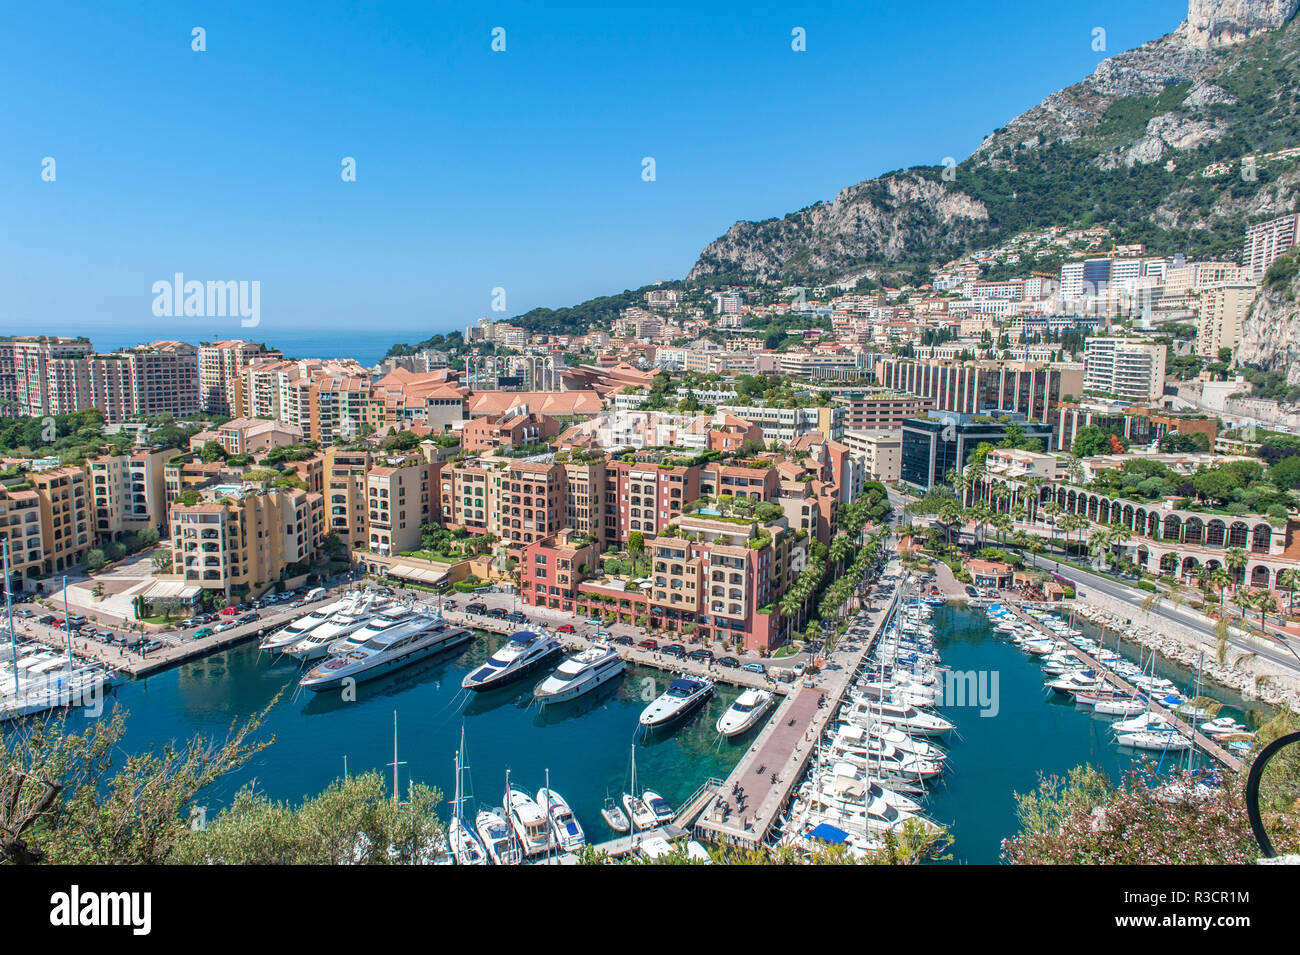 Marina, Port de Fontvieille, Fontvieille, Monaco, Cote d'Azur Foto Stock